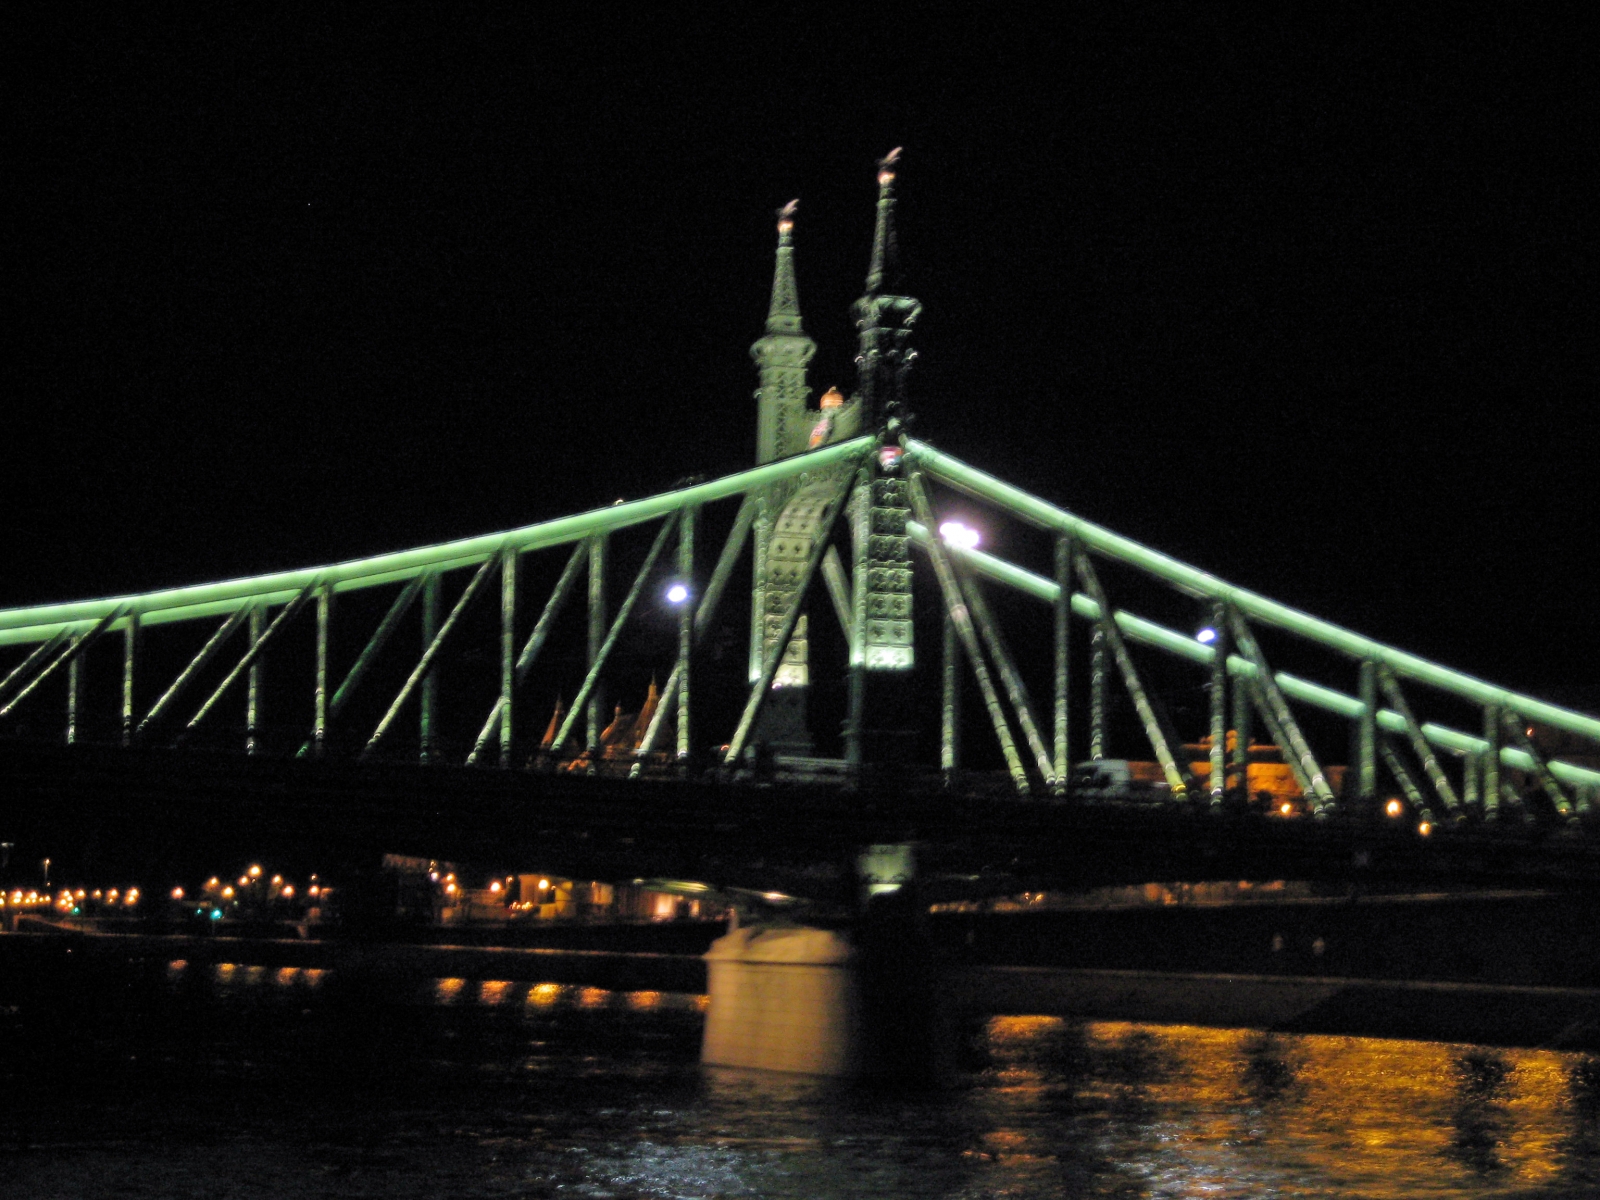 Liberty Bridge at night, Budapest, Hungary